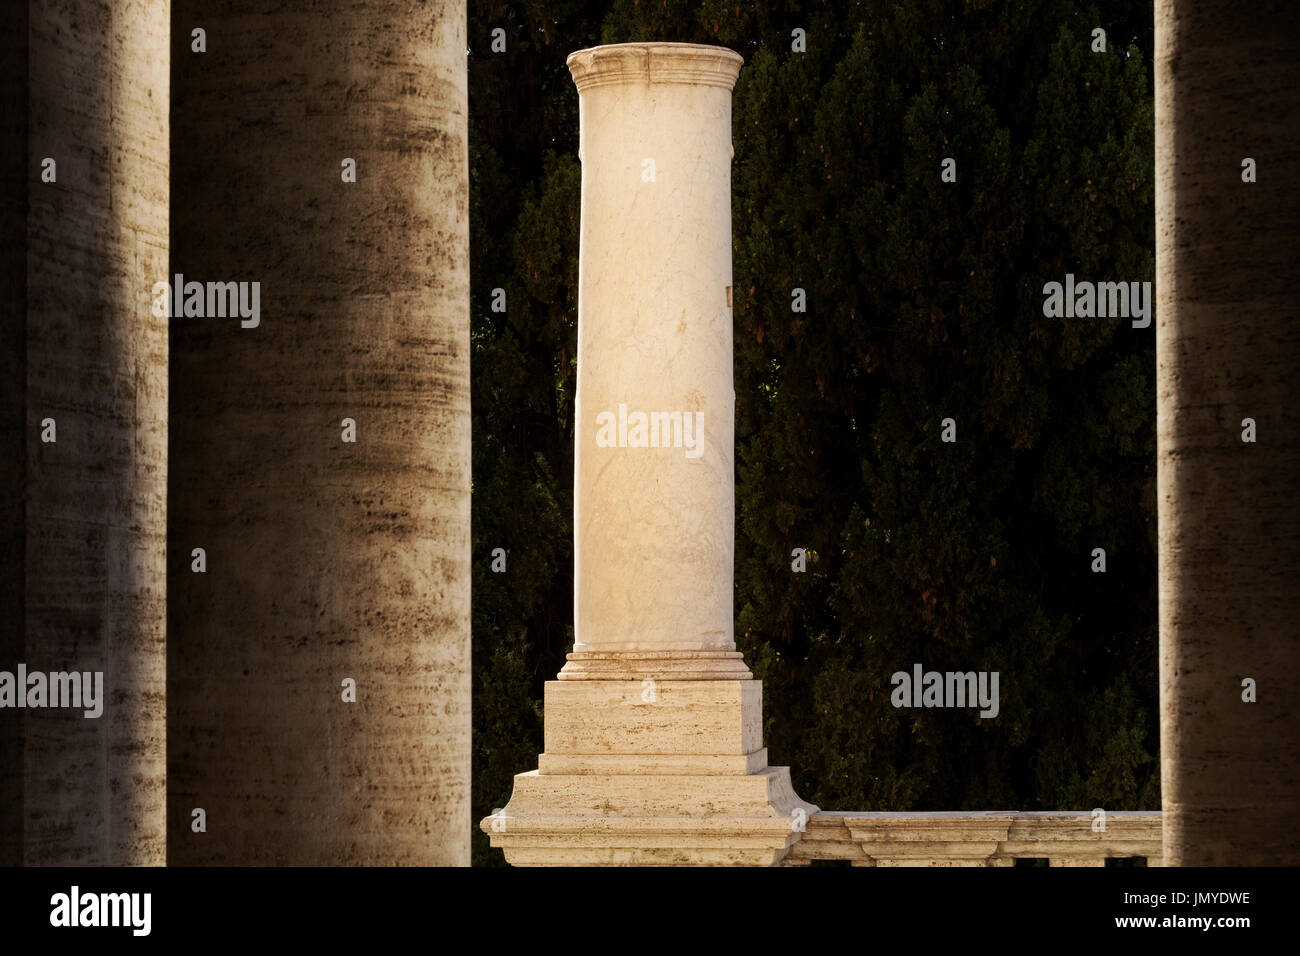 Première étape de la Via Appia Banque D'Images